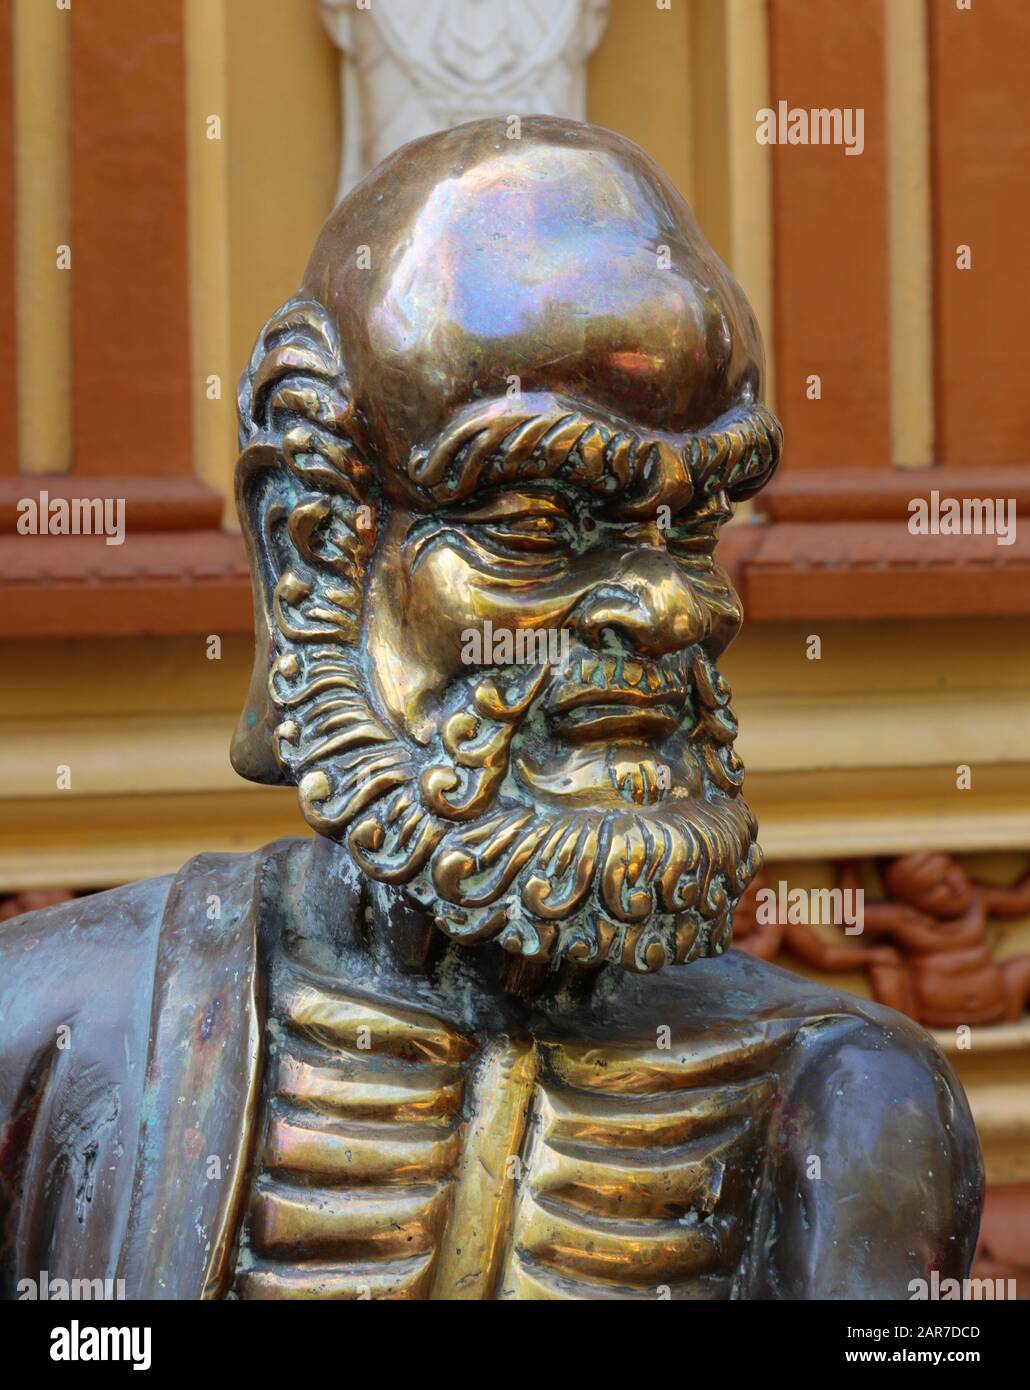 Estatua de bronce, posiblemente un Dios chino o figura de guarda en el frente del templo budista de Gangaramaya en Colombo, Sri Lanka Foto de stock